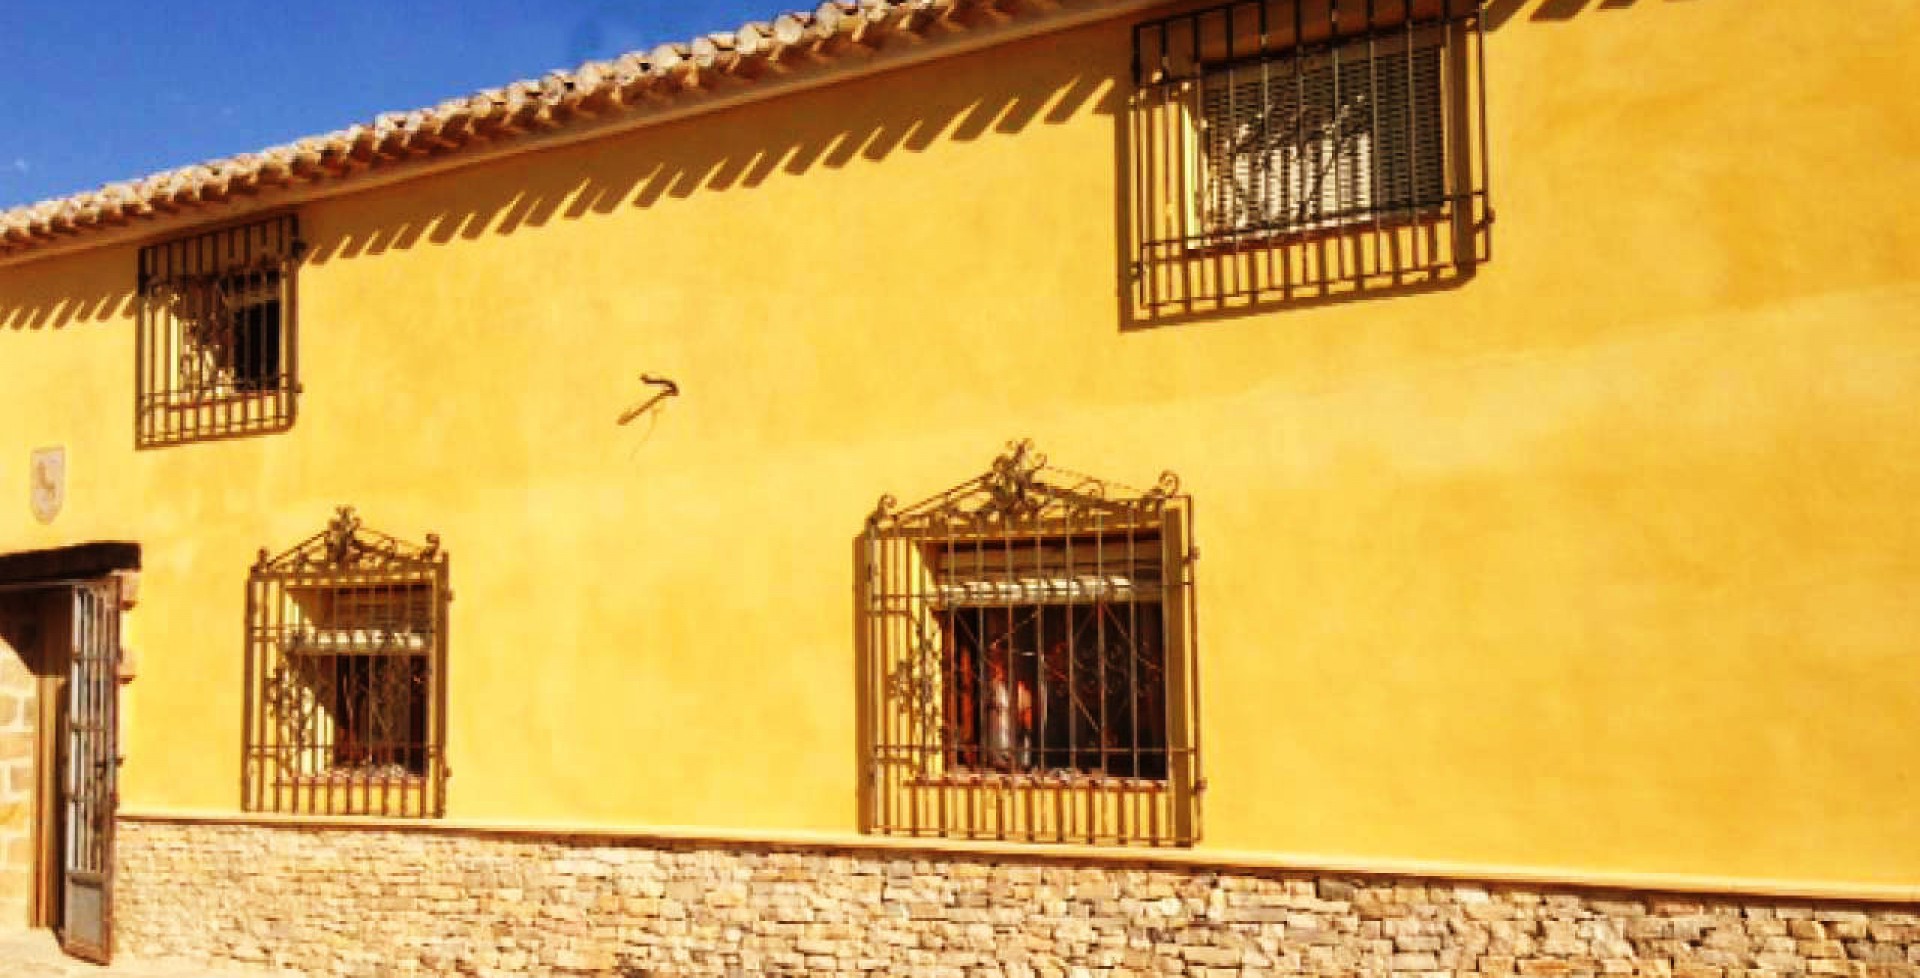 Gran Casa de campo estilo majestuoso, Ricote, Murcia, España